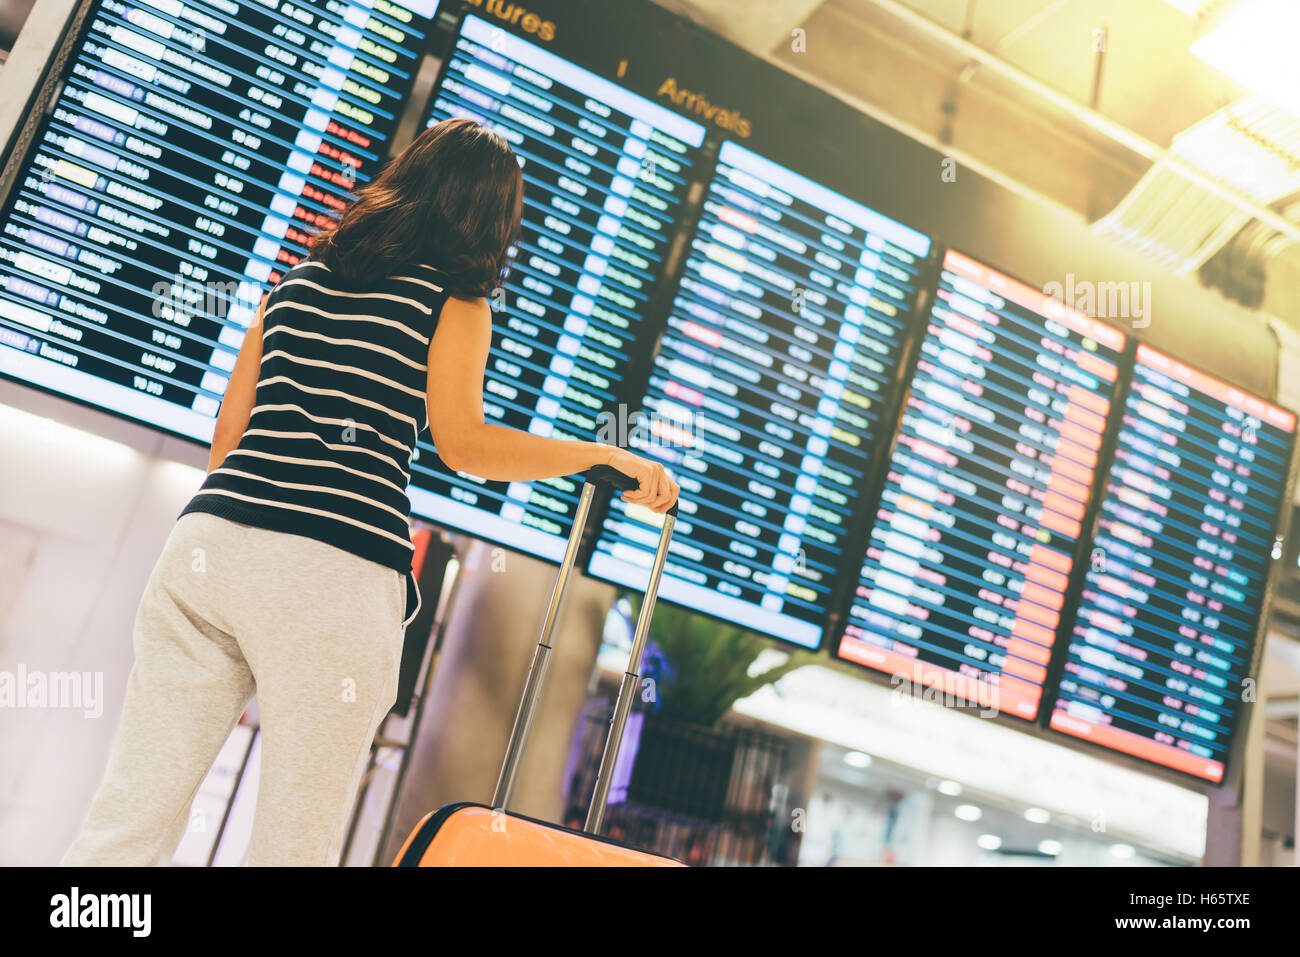 Asian woman traveler à la recherche d'information de vol à l'écran dans un aéroport, holding suitcase, billet ou l'heure, concept lumière chaude Banque D'Images